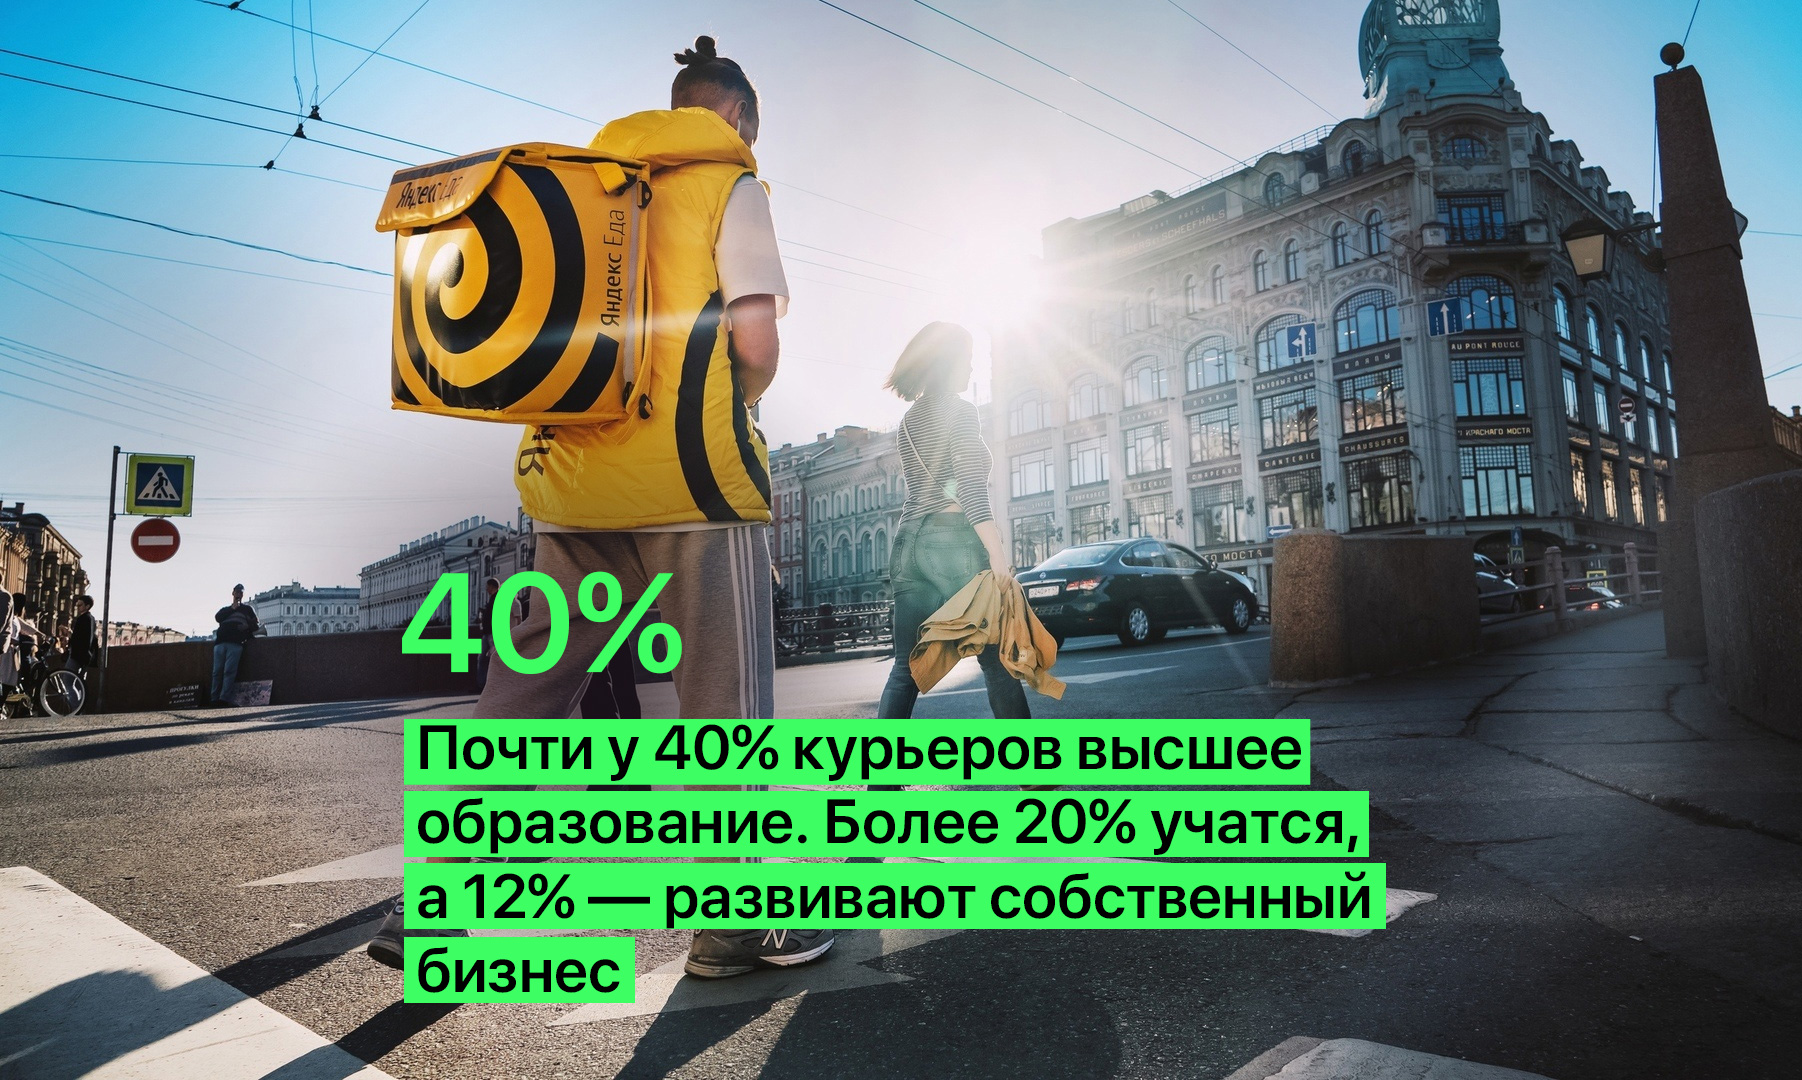 Яндекс.Доставка, Курьер, Исследование